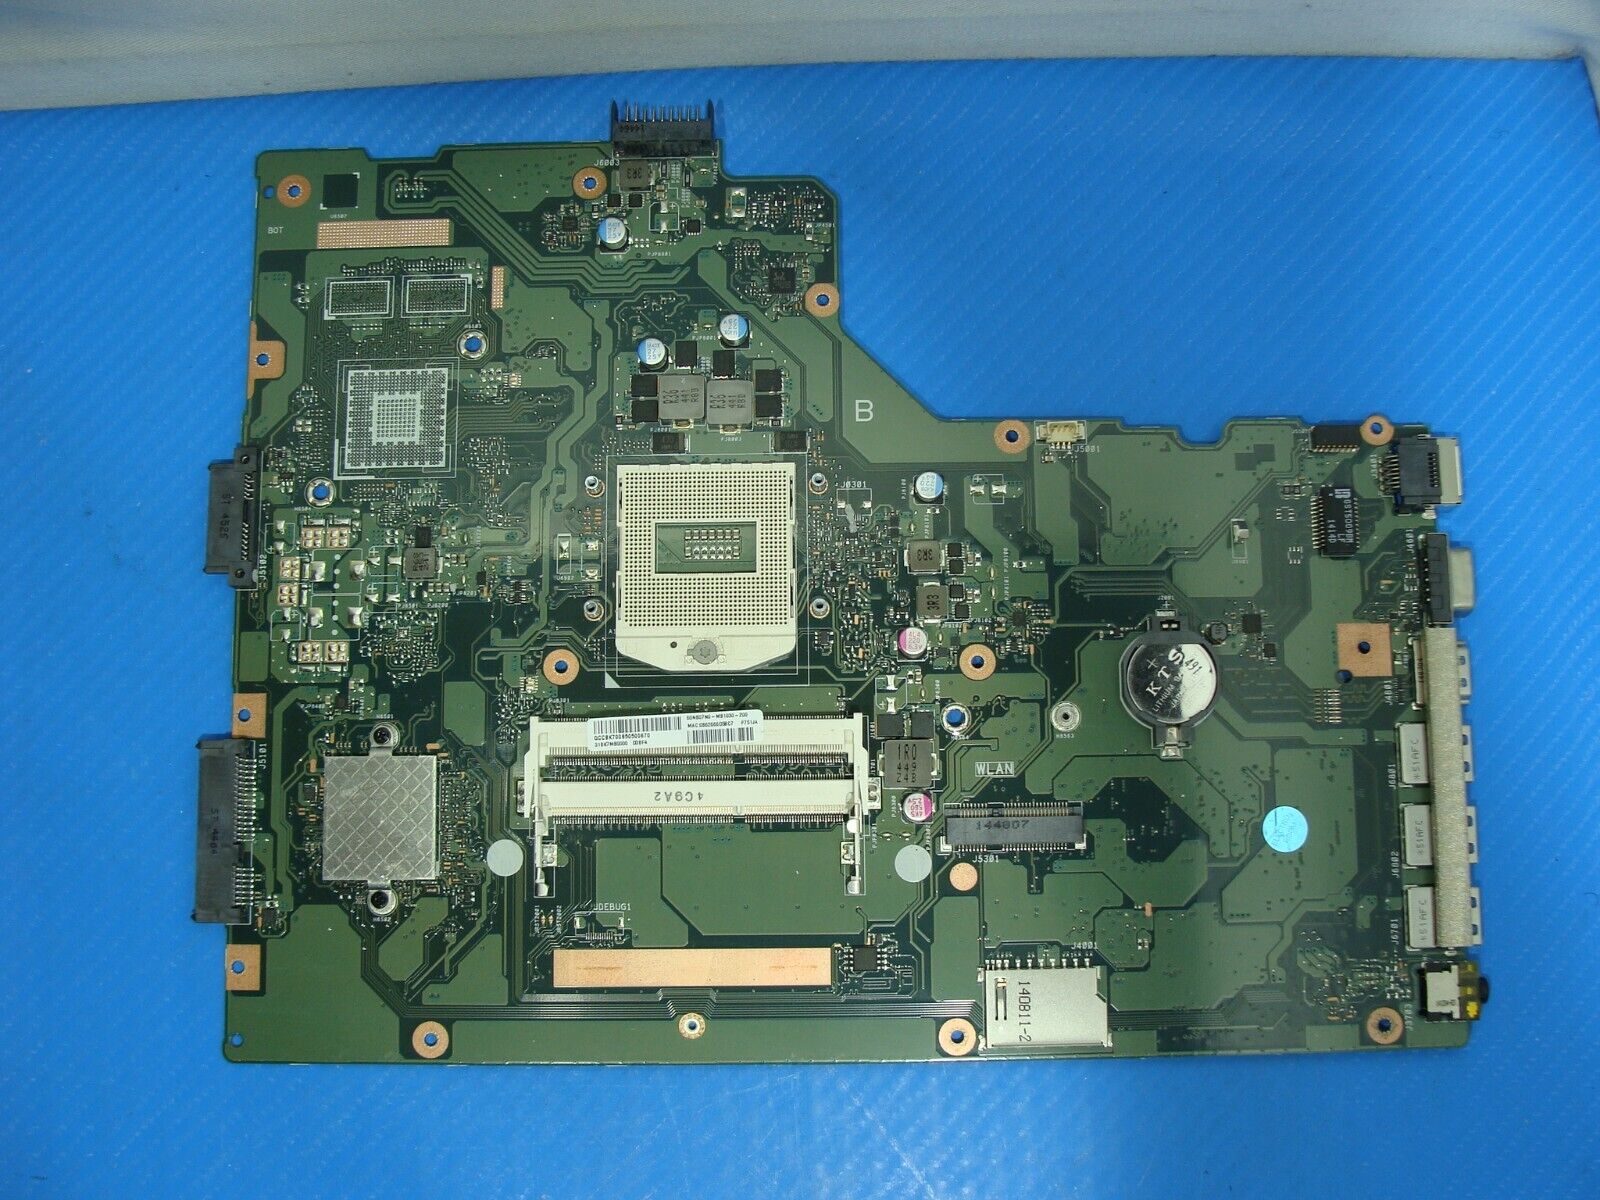 Asus VivoBook 15.6” X755JA OEM Laptop Intel Socket Motherboard 60NB07N0-MB1030